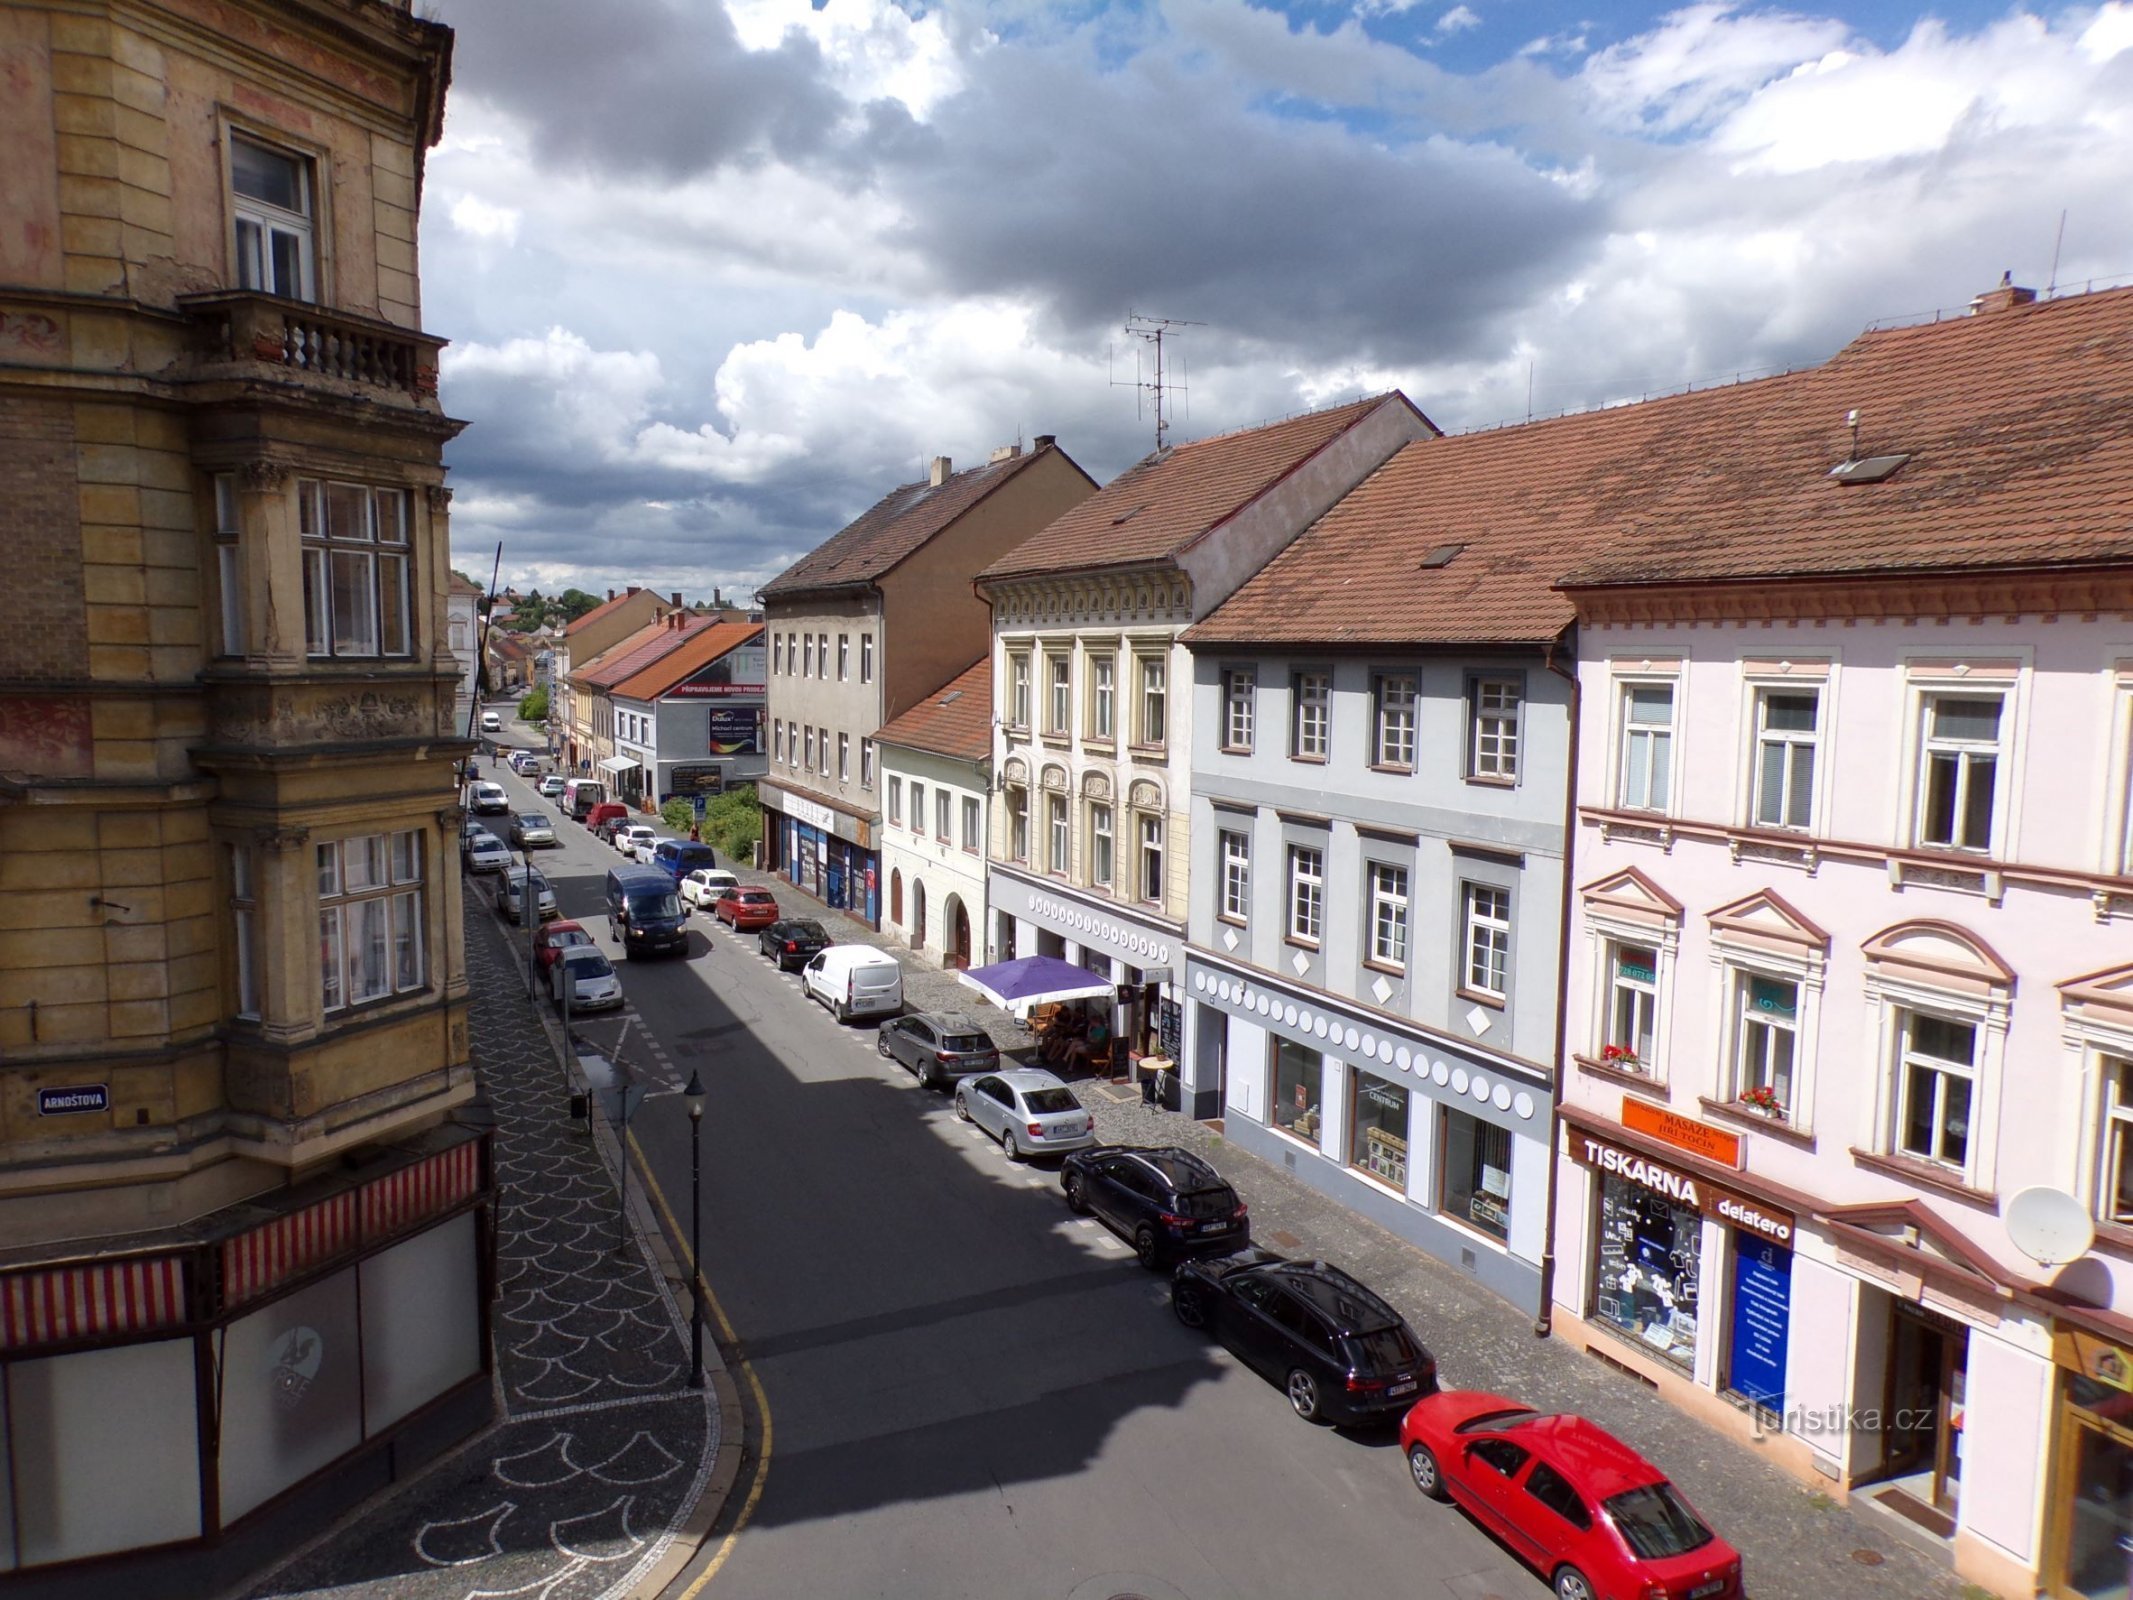 Άποψη της πλατείας Jana z Dražice (Roudnice nad Labem, 9.7.2021/XNUMX/XNUMX)